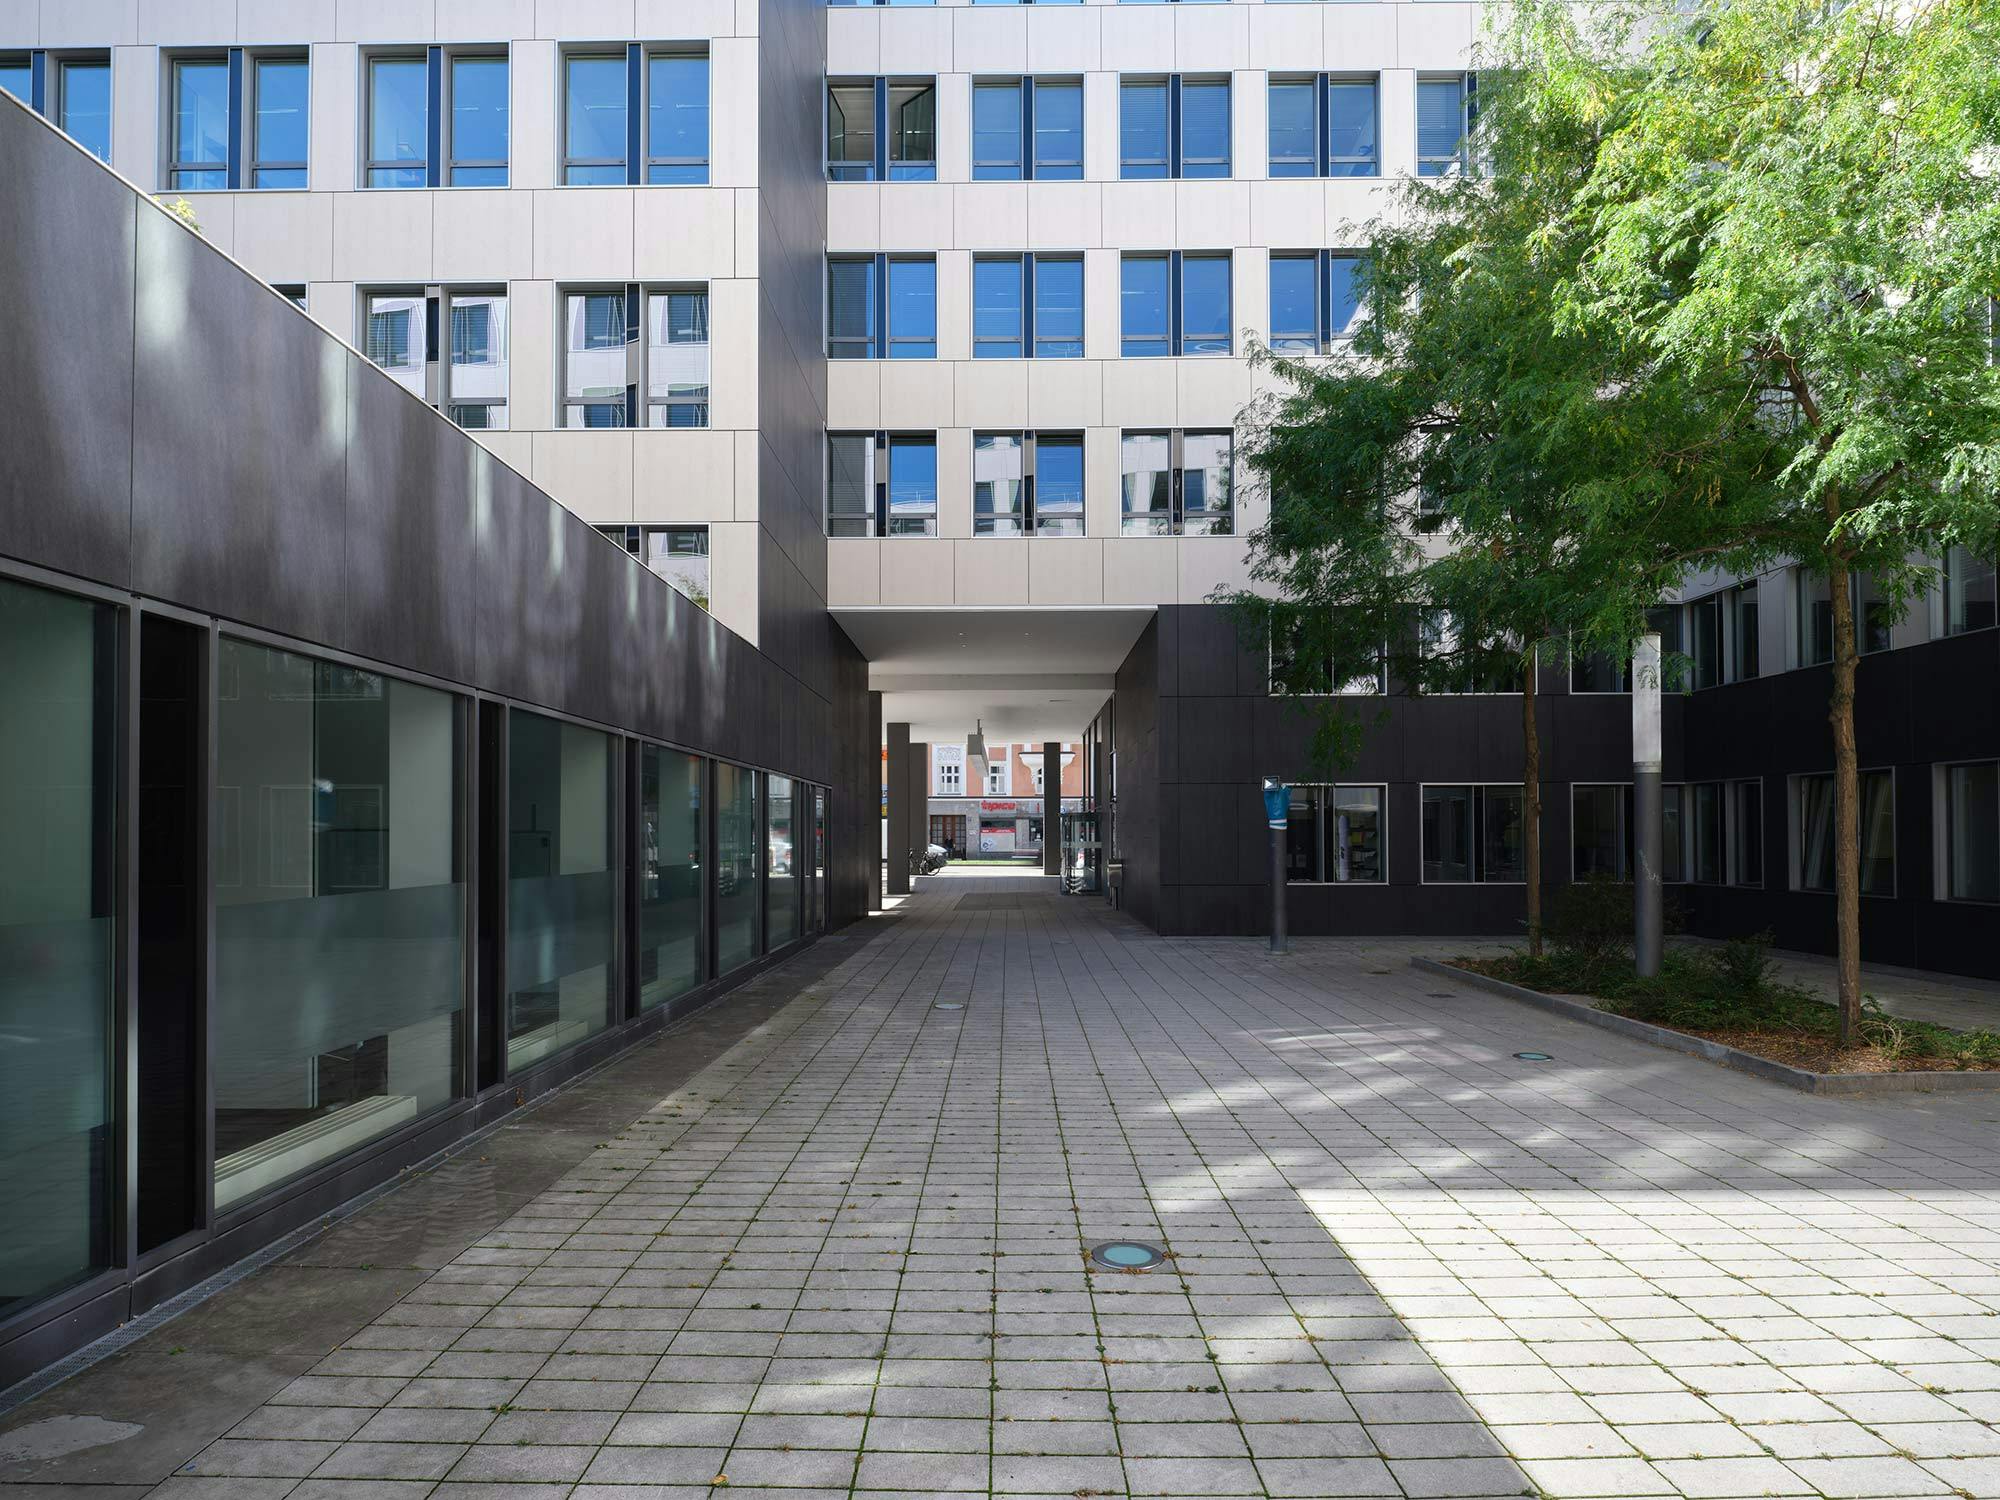 Image 60 of Fachada office building Munich.jpg?auto=format%2Ccompress&ixlib=php 3.3 in A complex Dekton facade for The Warner Building in Michigan - Cosentino